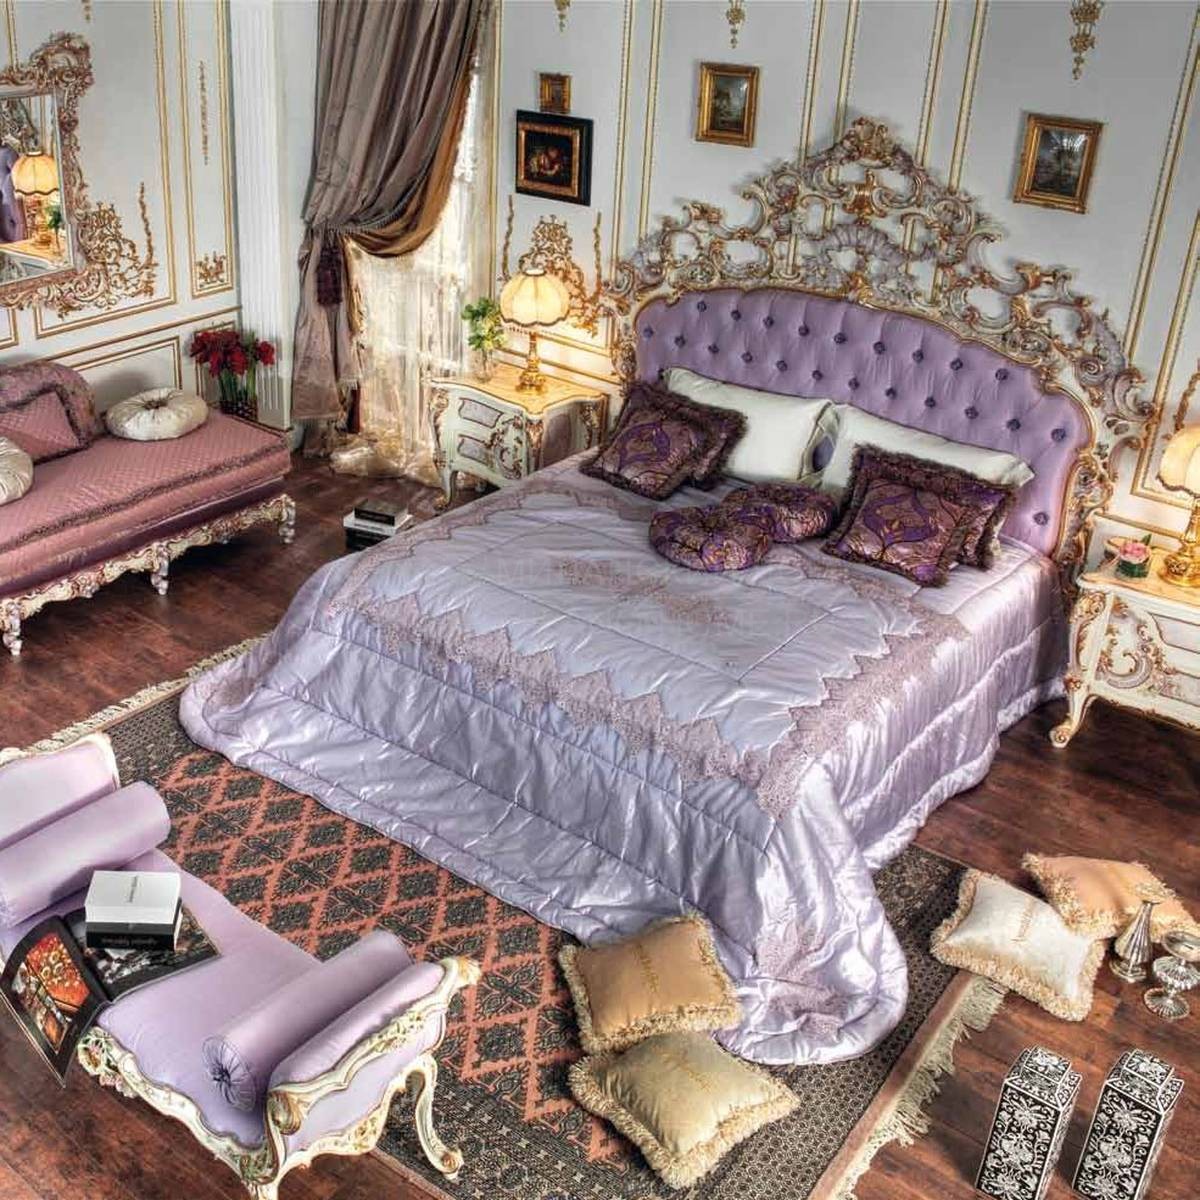 Двуспальная кровать GD 7101 Violetta/bed из Италии фабрики ASNAGHI INTERIORS